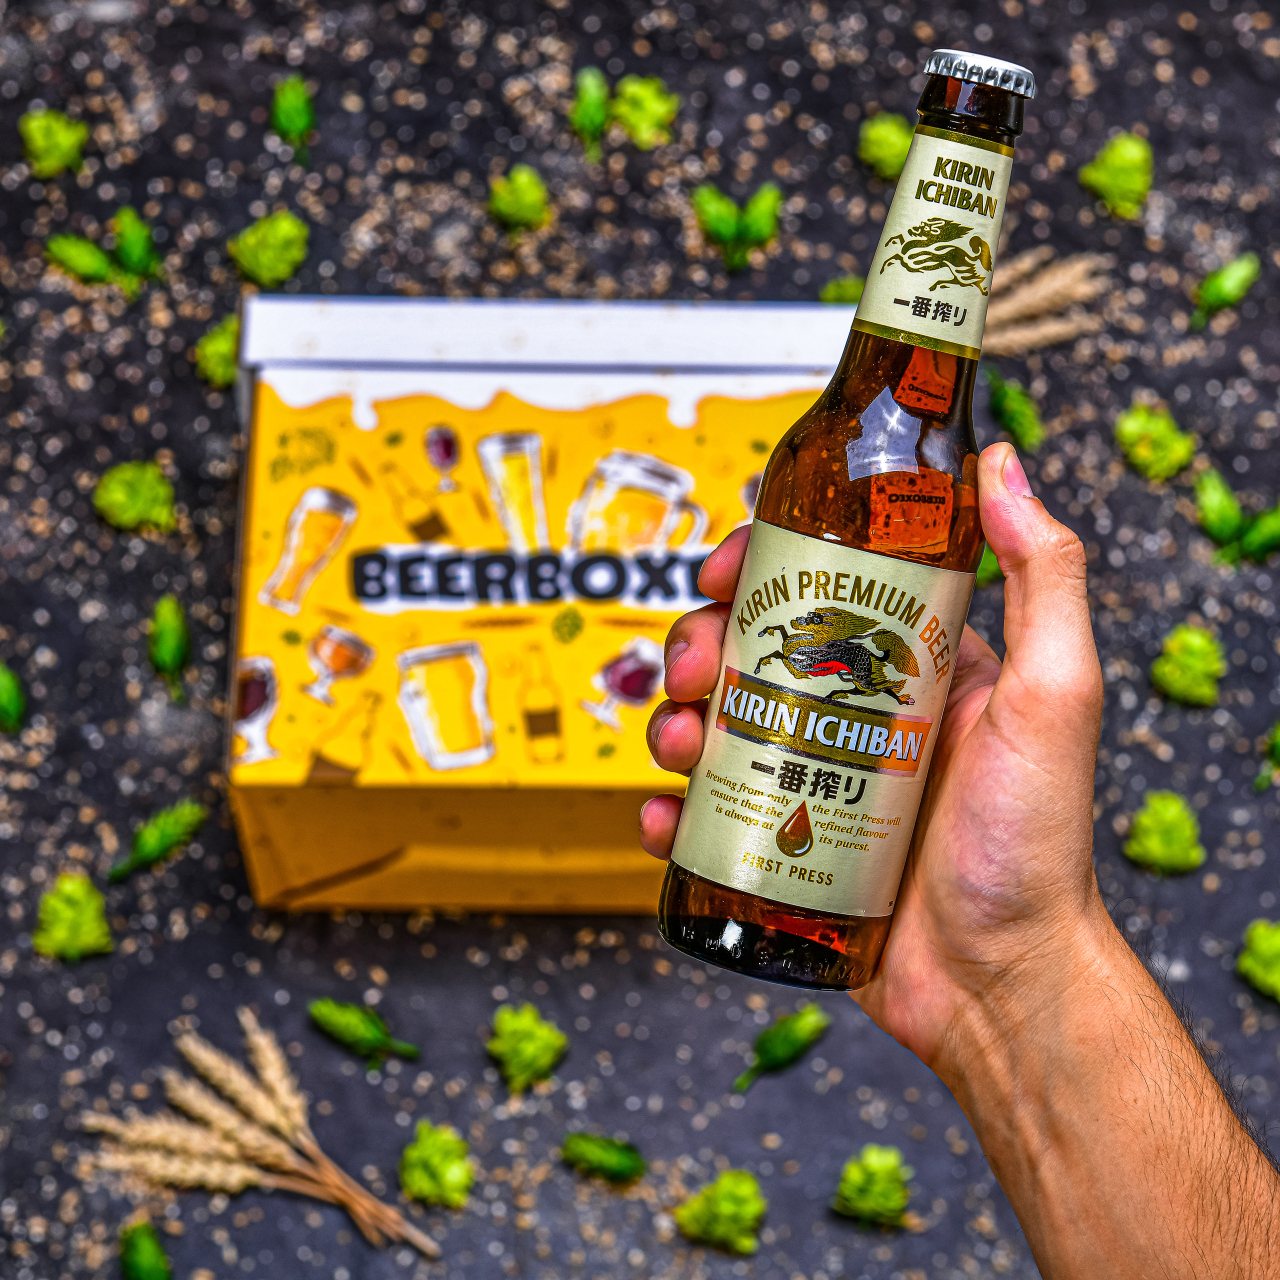 BeerBOXEO plné pivních speciálů s pivním Hrnkem vol.2